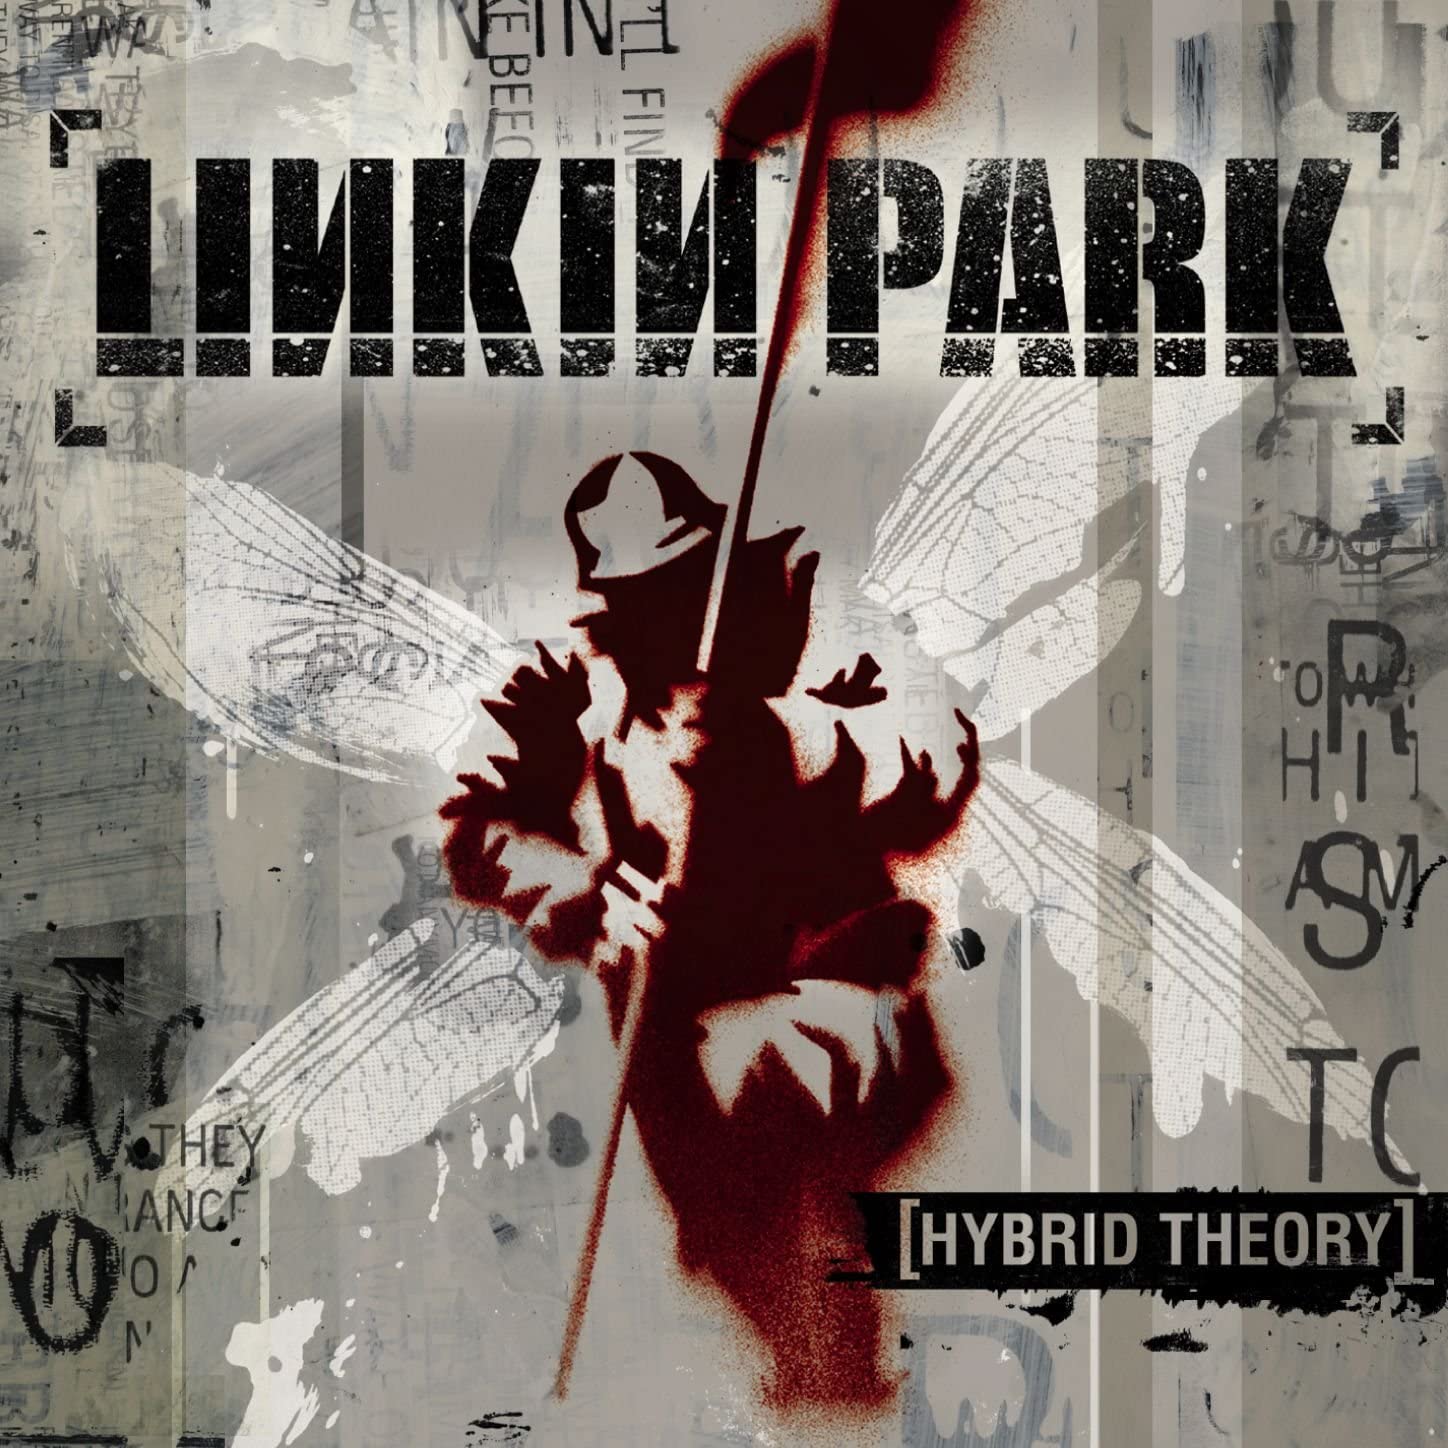 Hybrid Theory, álbum debut de Linkin Park, fue aclamado por la crítica y el público en general.